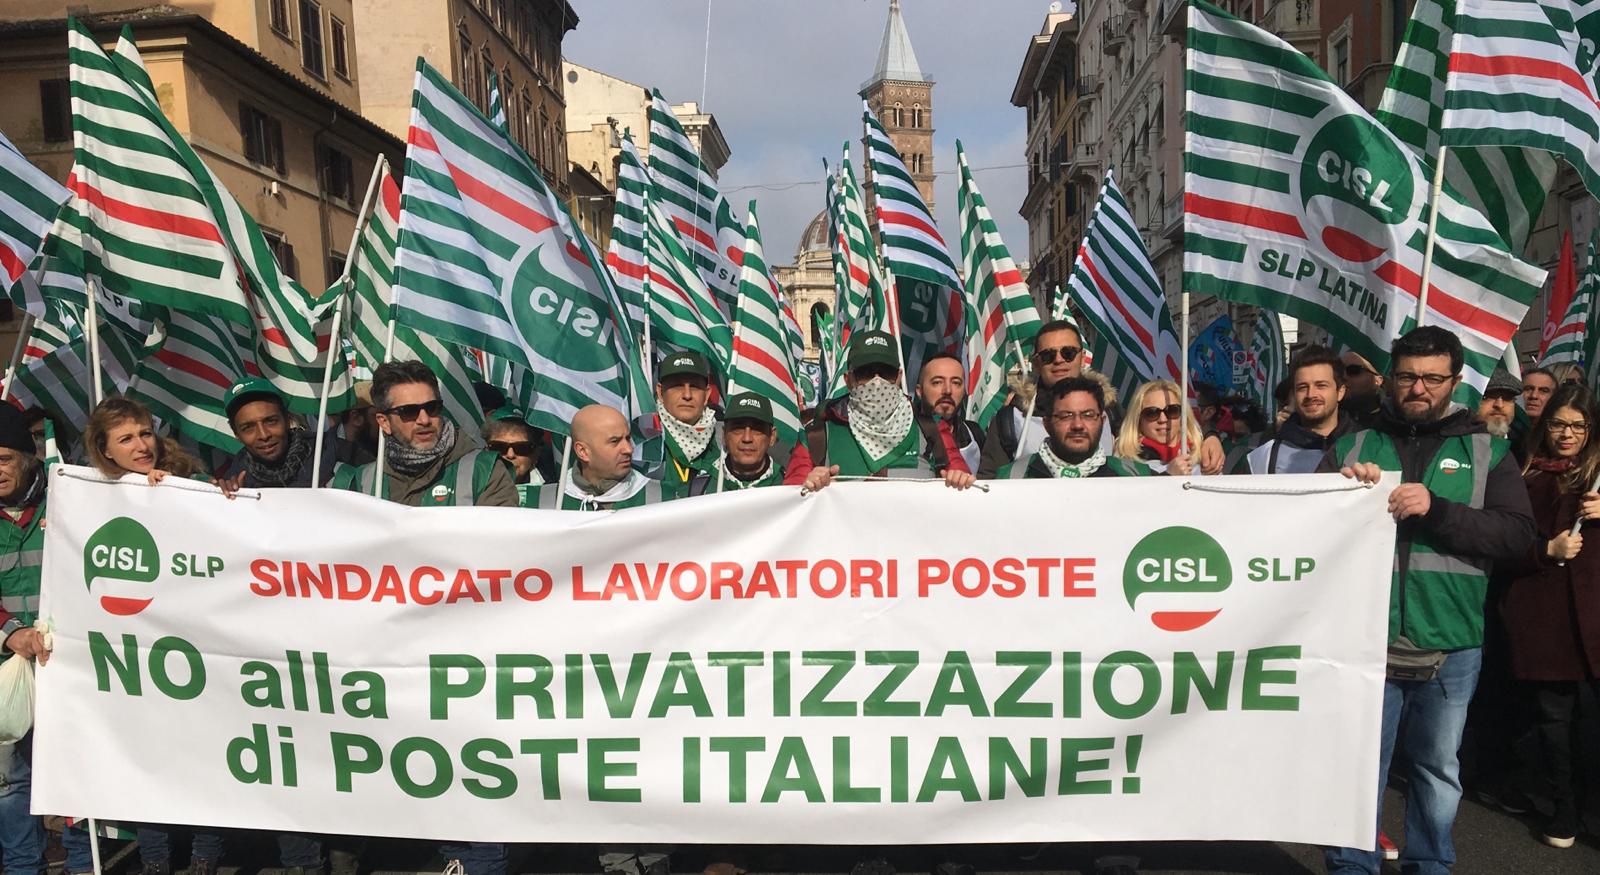 SLP CISL AbruzzoMolise Poste: “No alla privatizzazione”. Presentata la piattaforma per il rinnovo del contratto